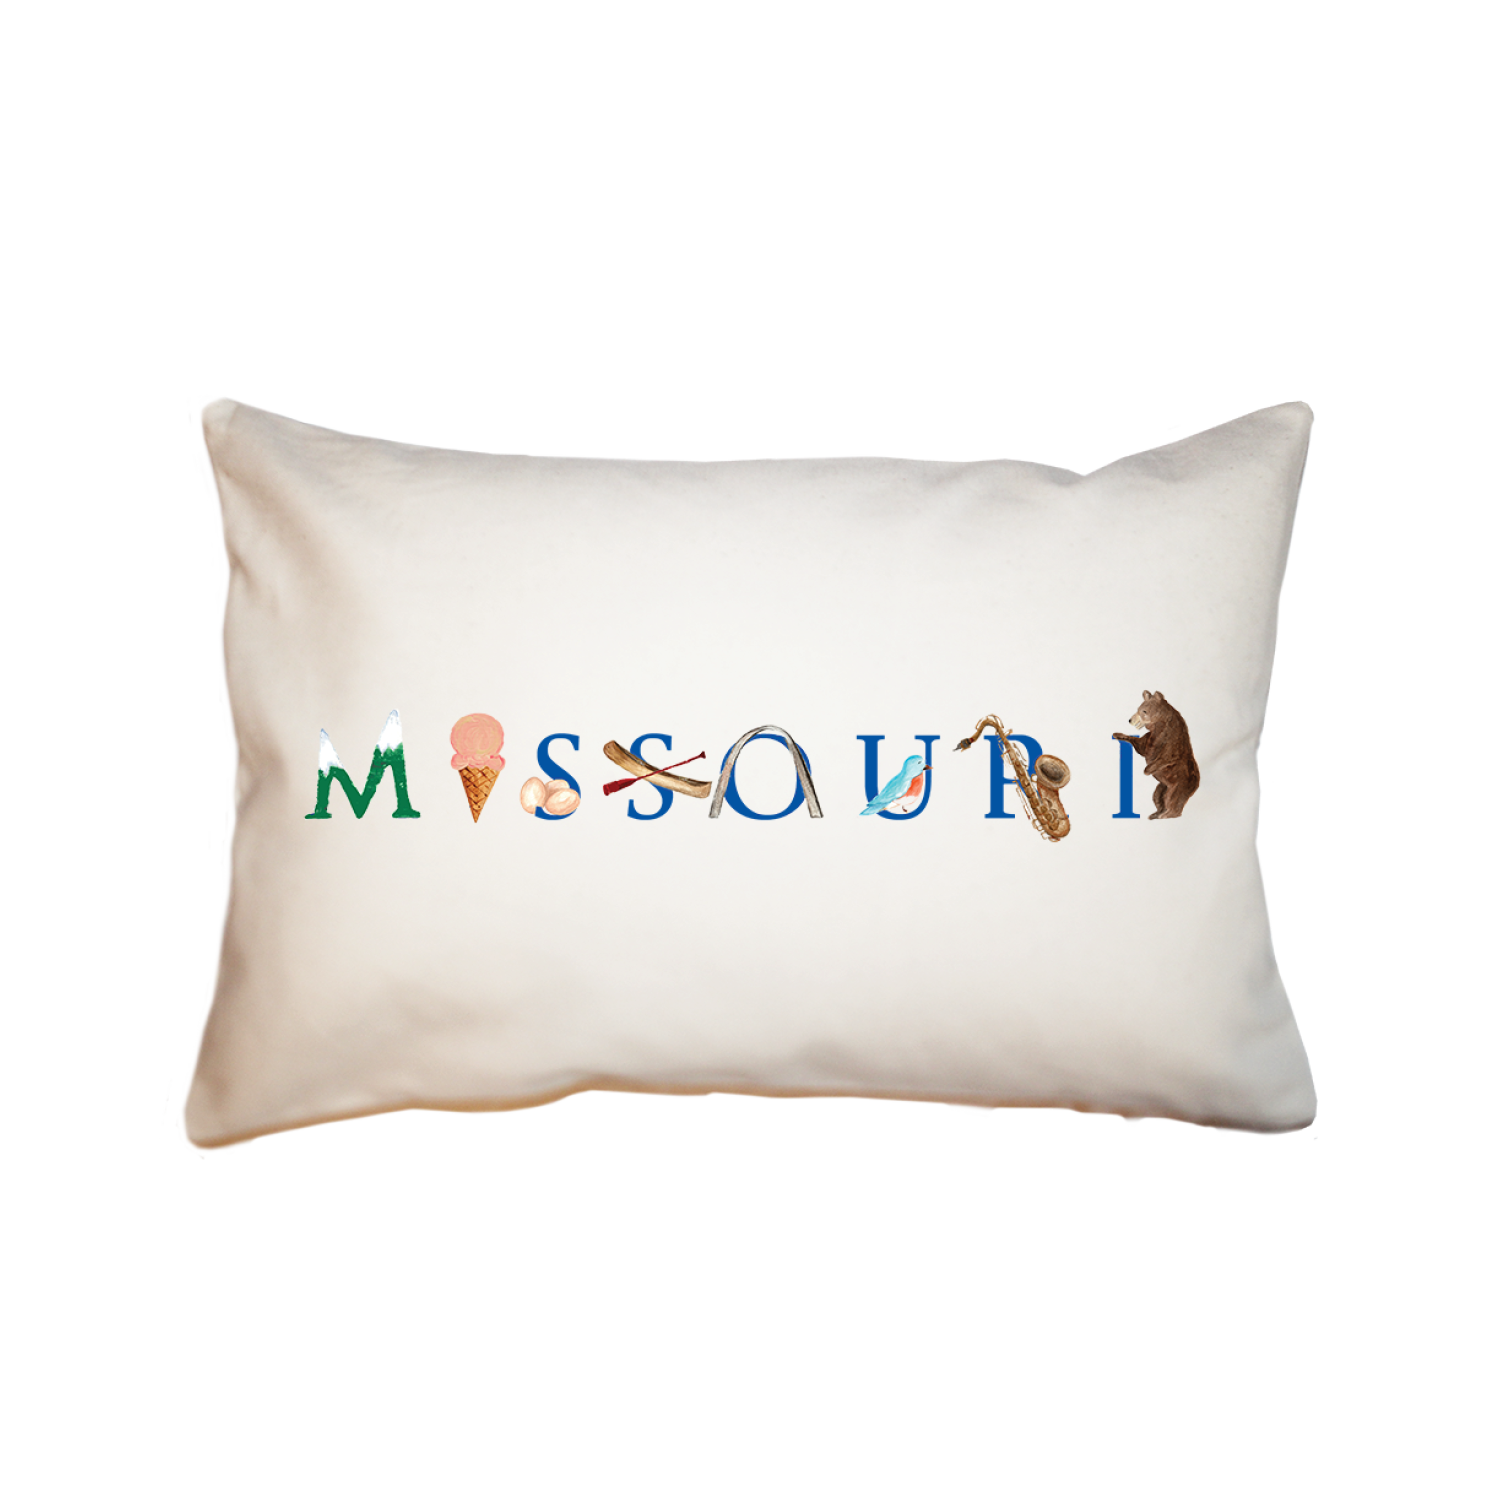 Missouri large rectangle pillow